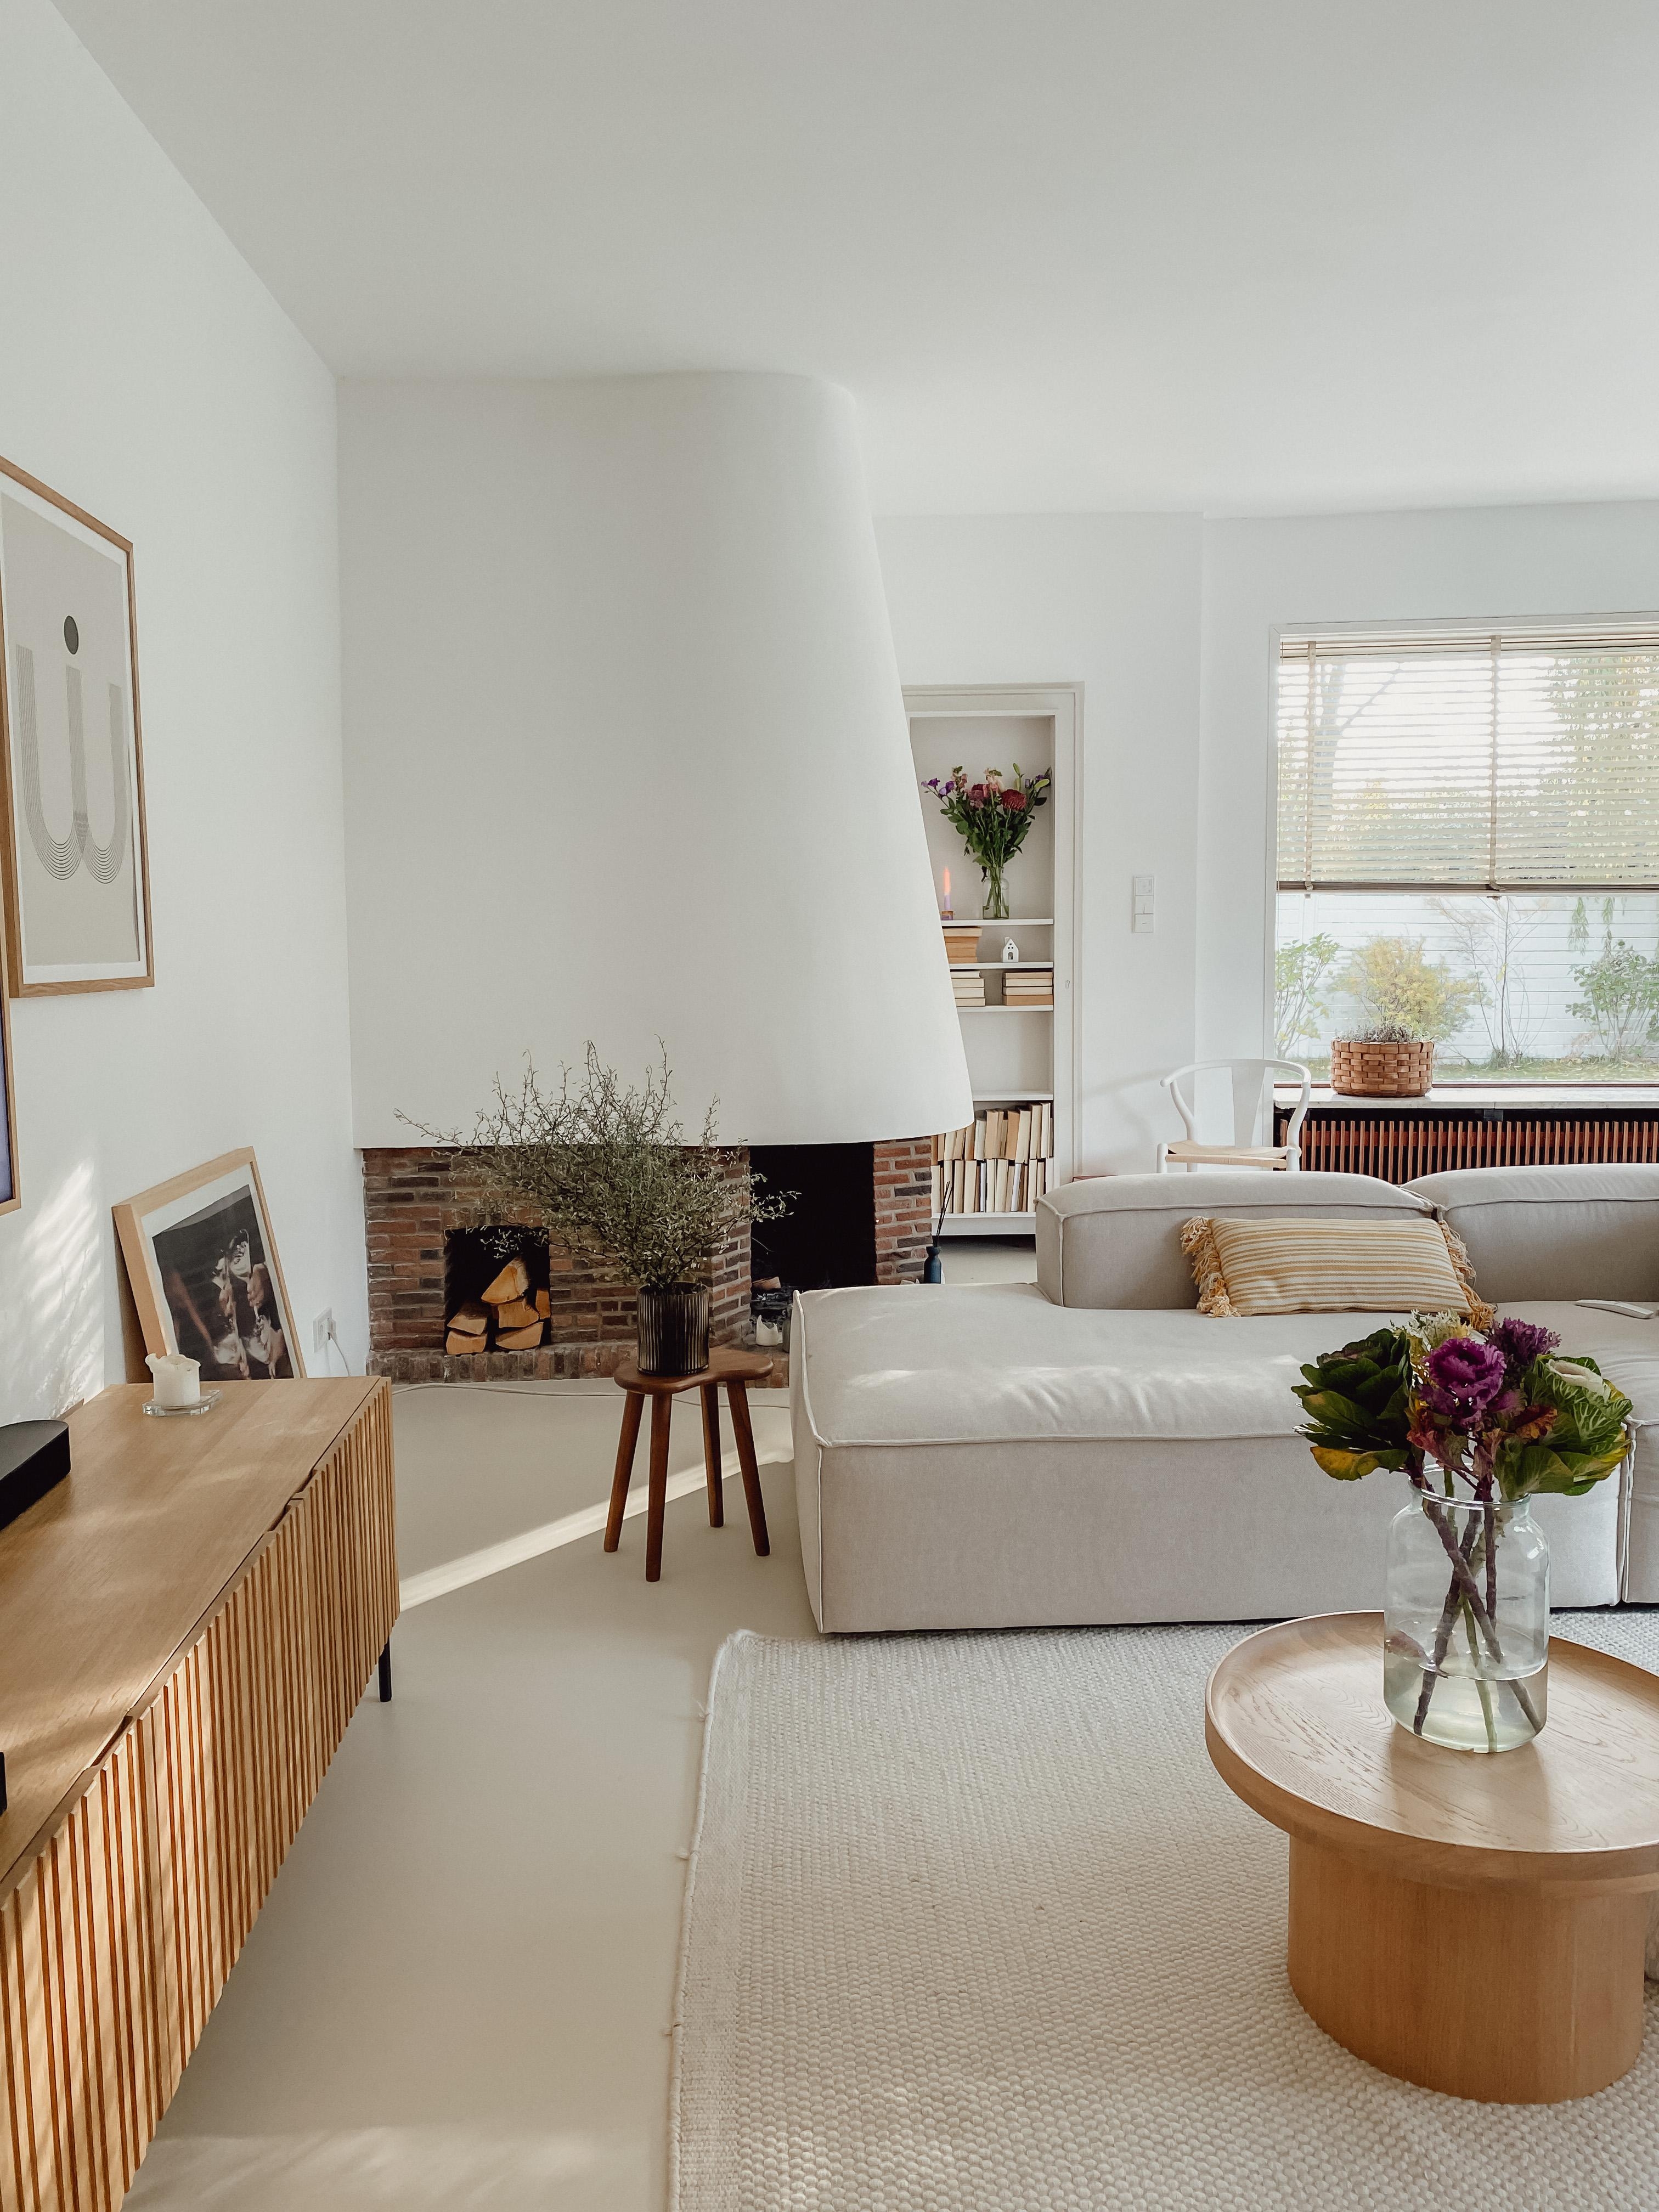 #couchliebt #wohnzimmer #beige #skandi #interior #couch #kamin #whiteliving #interiordesign #recamiere 